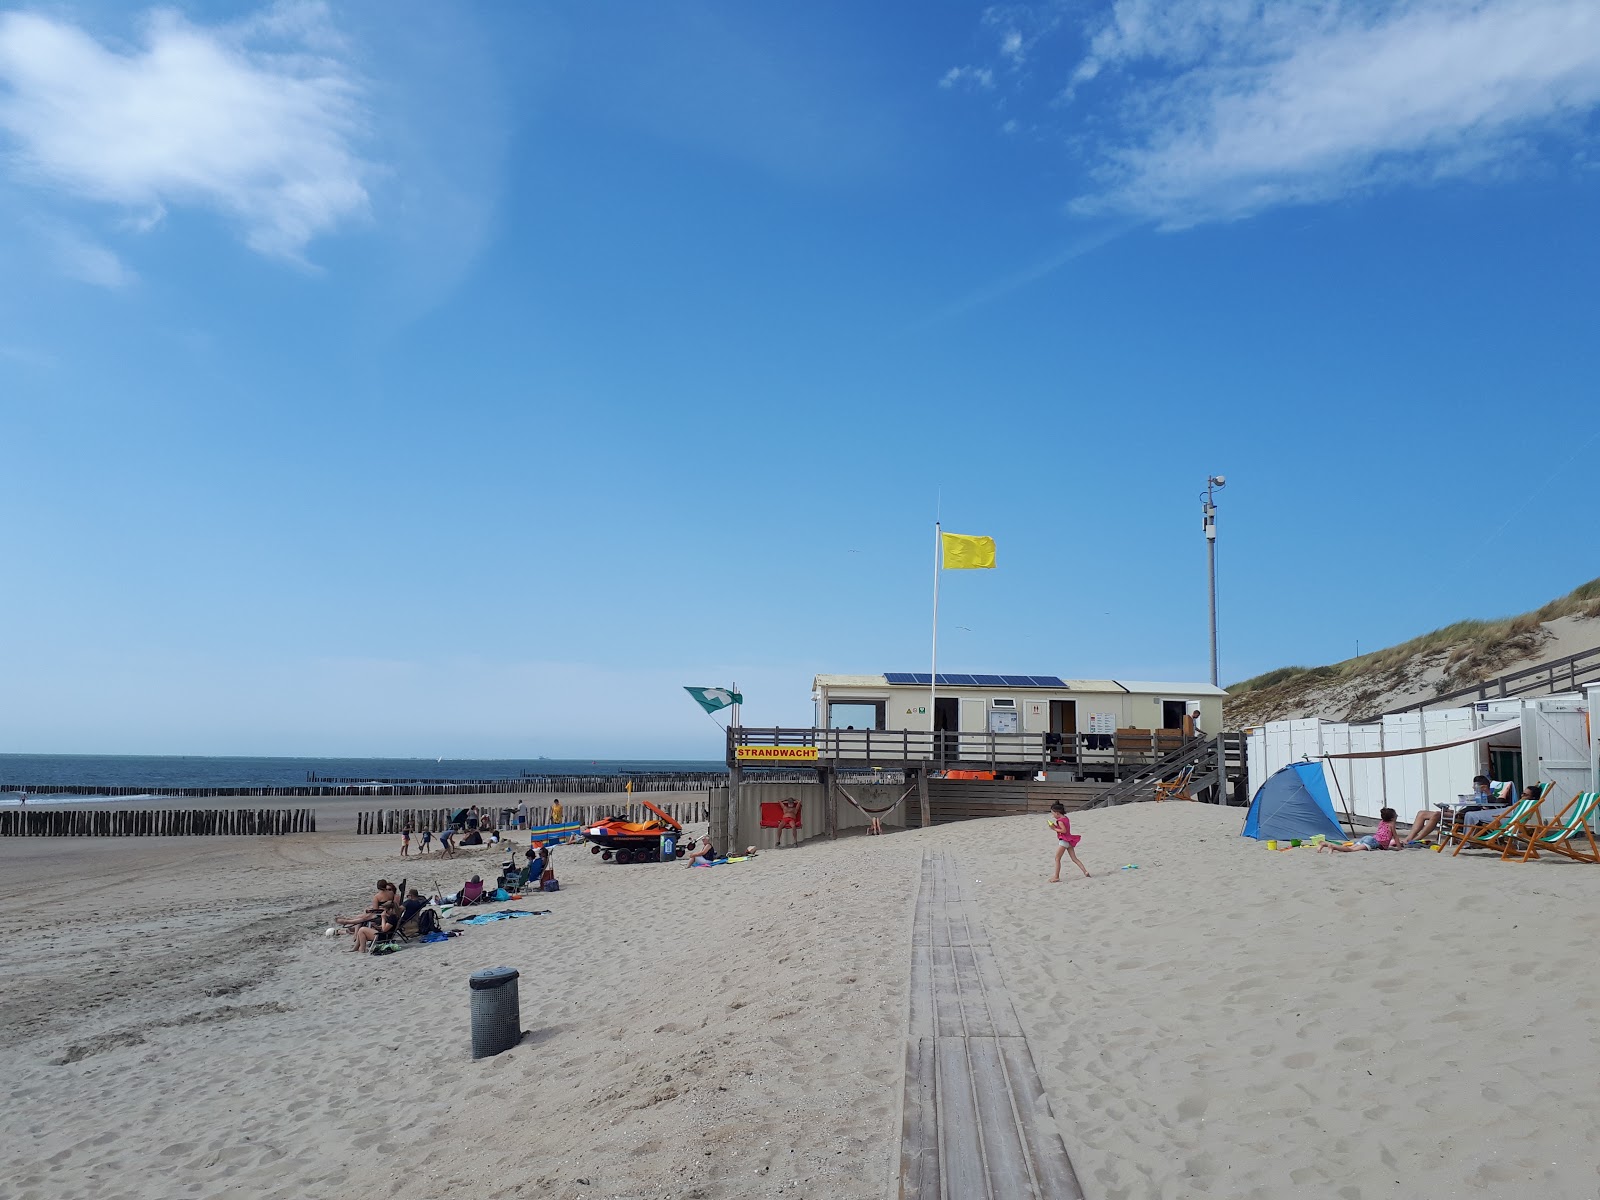 Fotografija Joossesweg beach priljubljeno mesto med poznavalci sprostitve